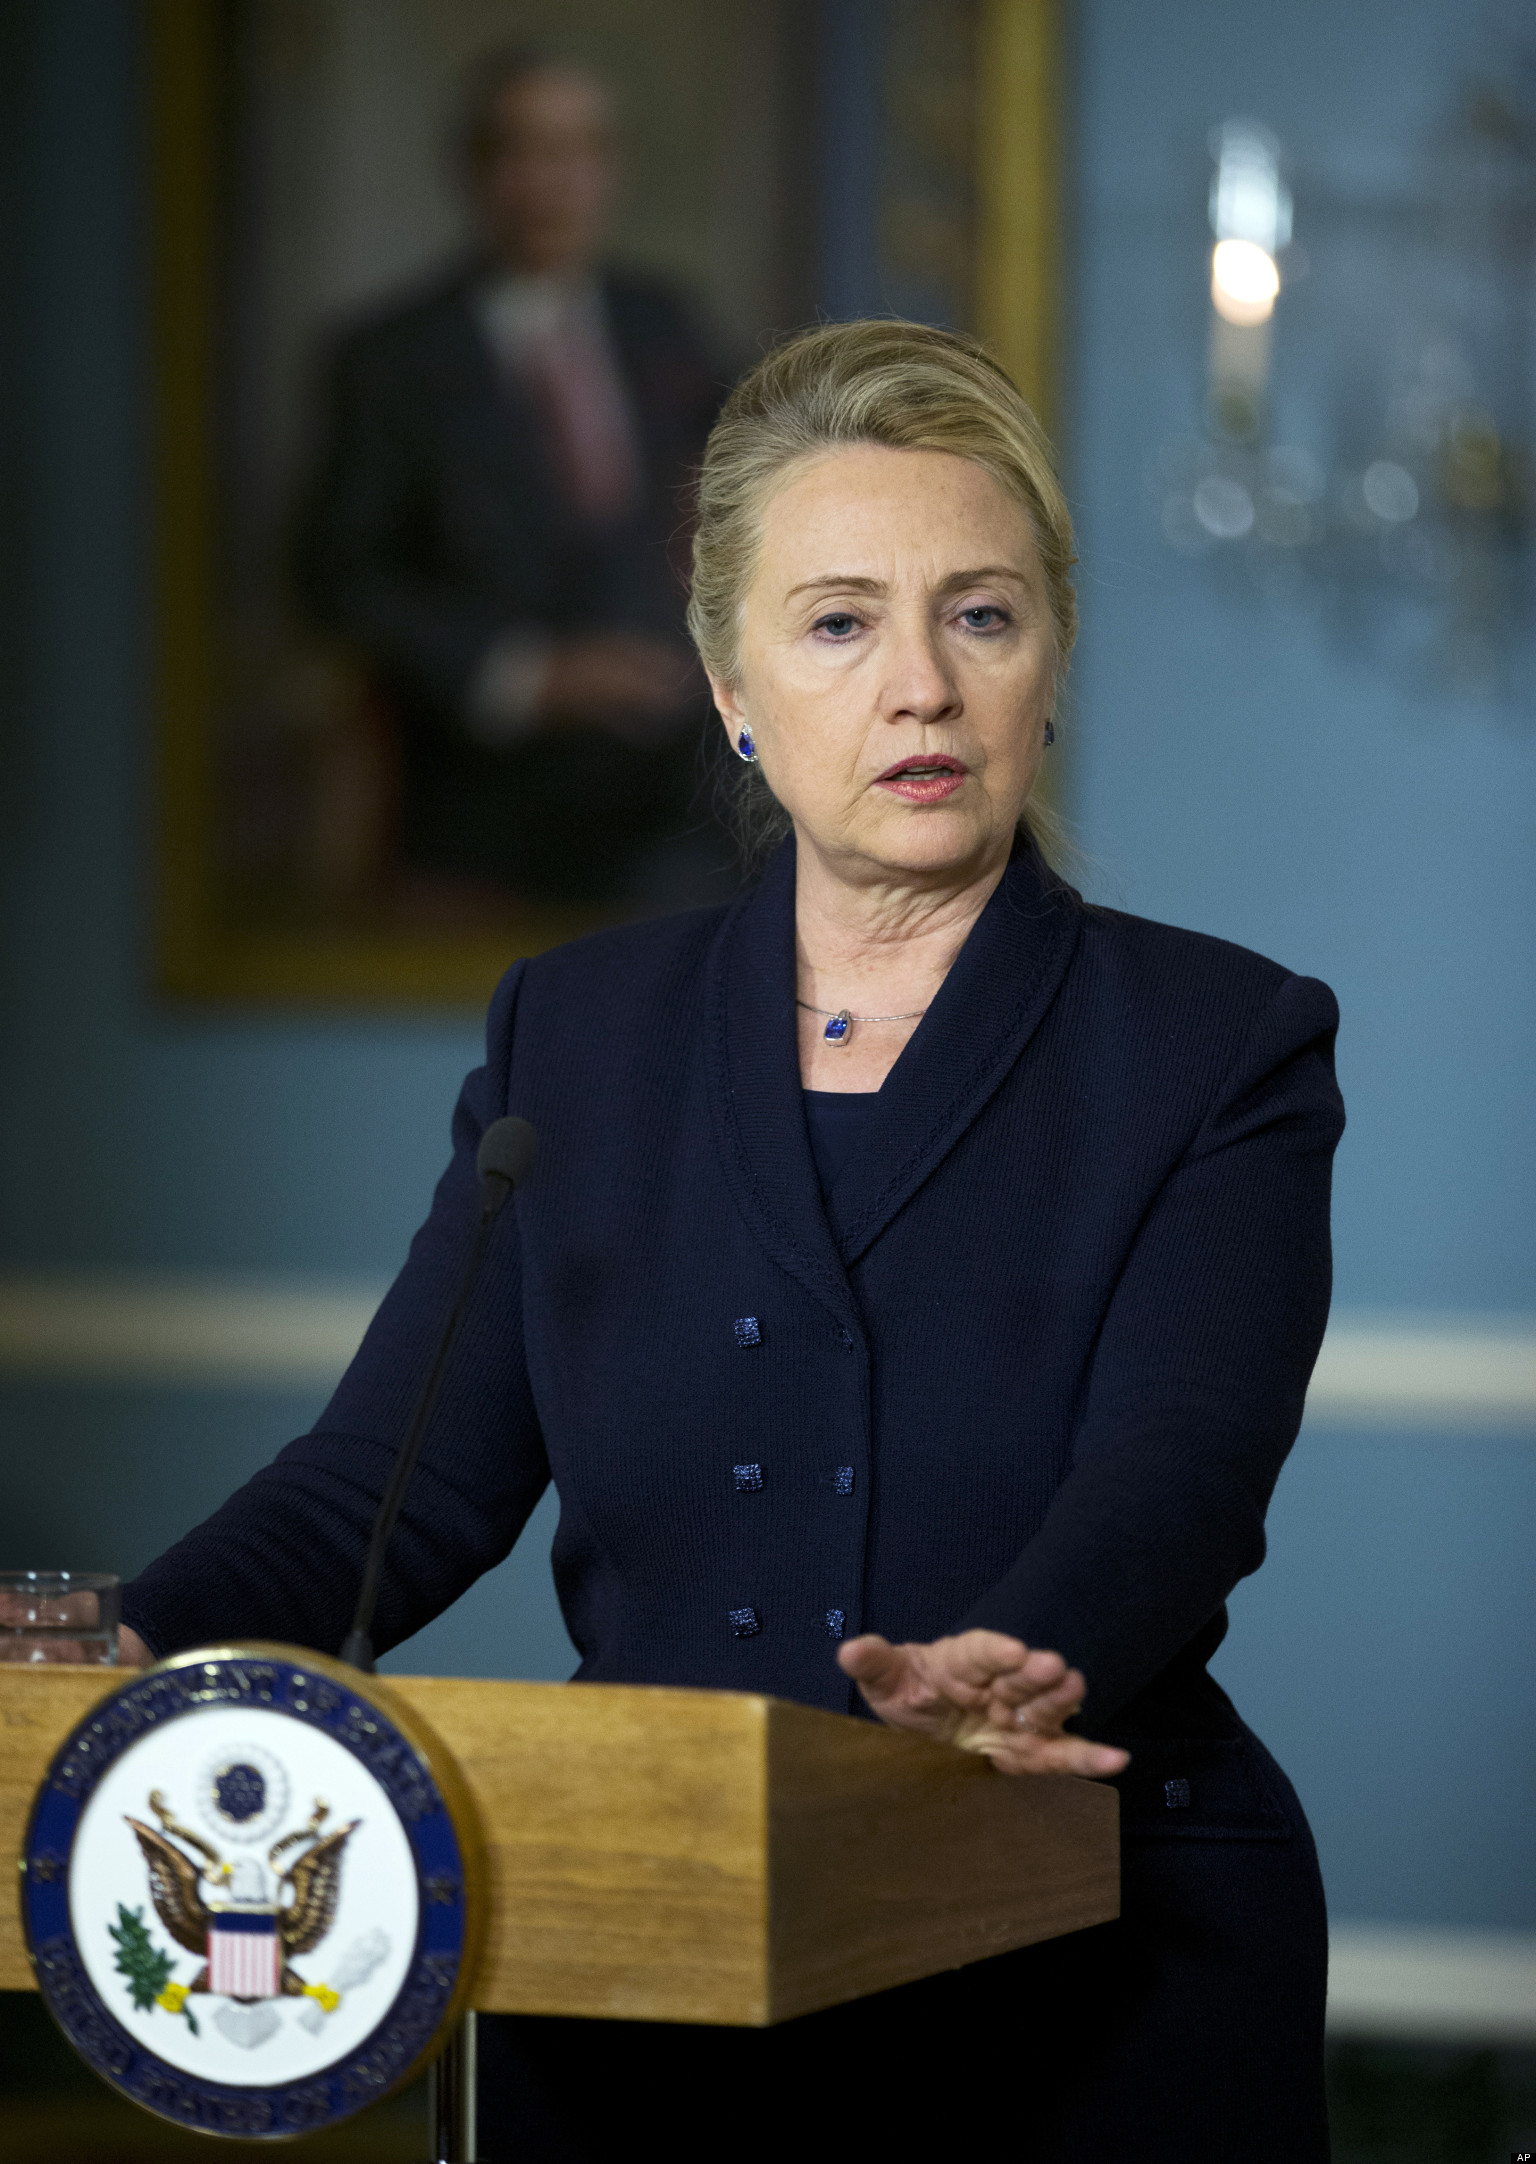 Hillary Lindsey - Bilder, News, Infos aus dem Web1536 x 2164